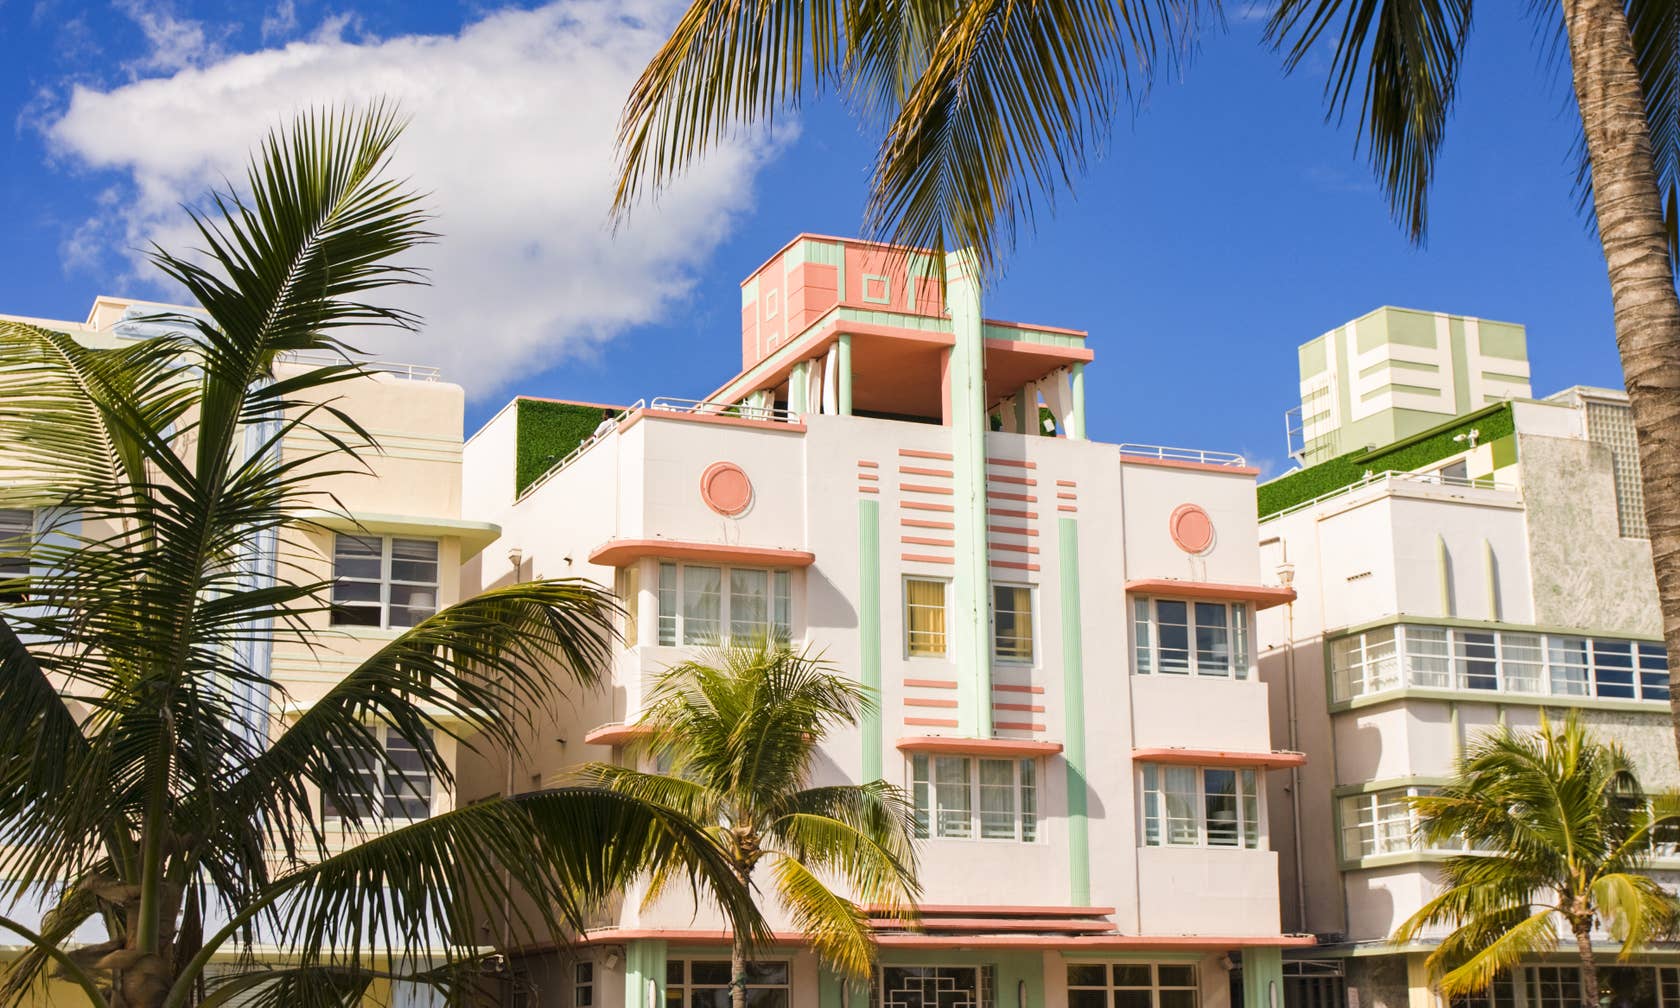 Vakantieverhuur in South Beach, Miami Beach